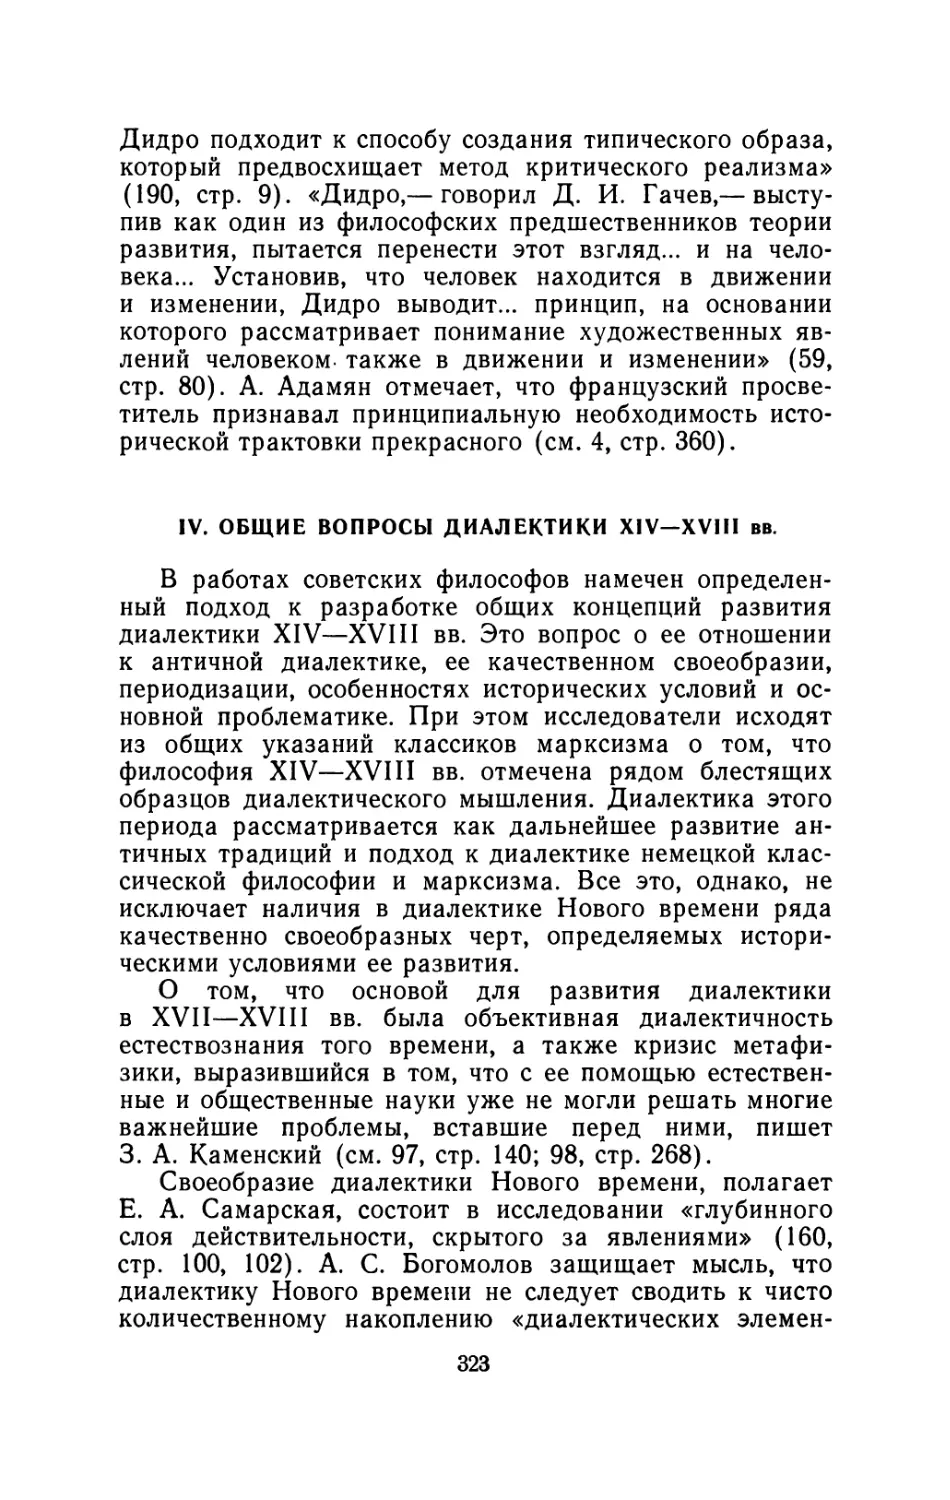 IV. Общие вопросы диалектики XIV - XVIII вв.